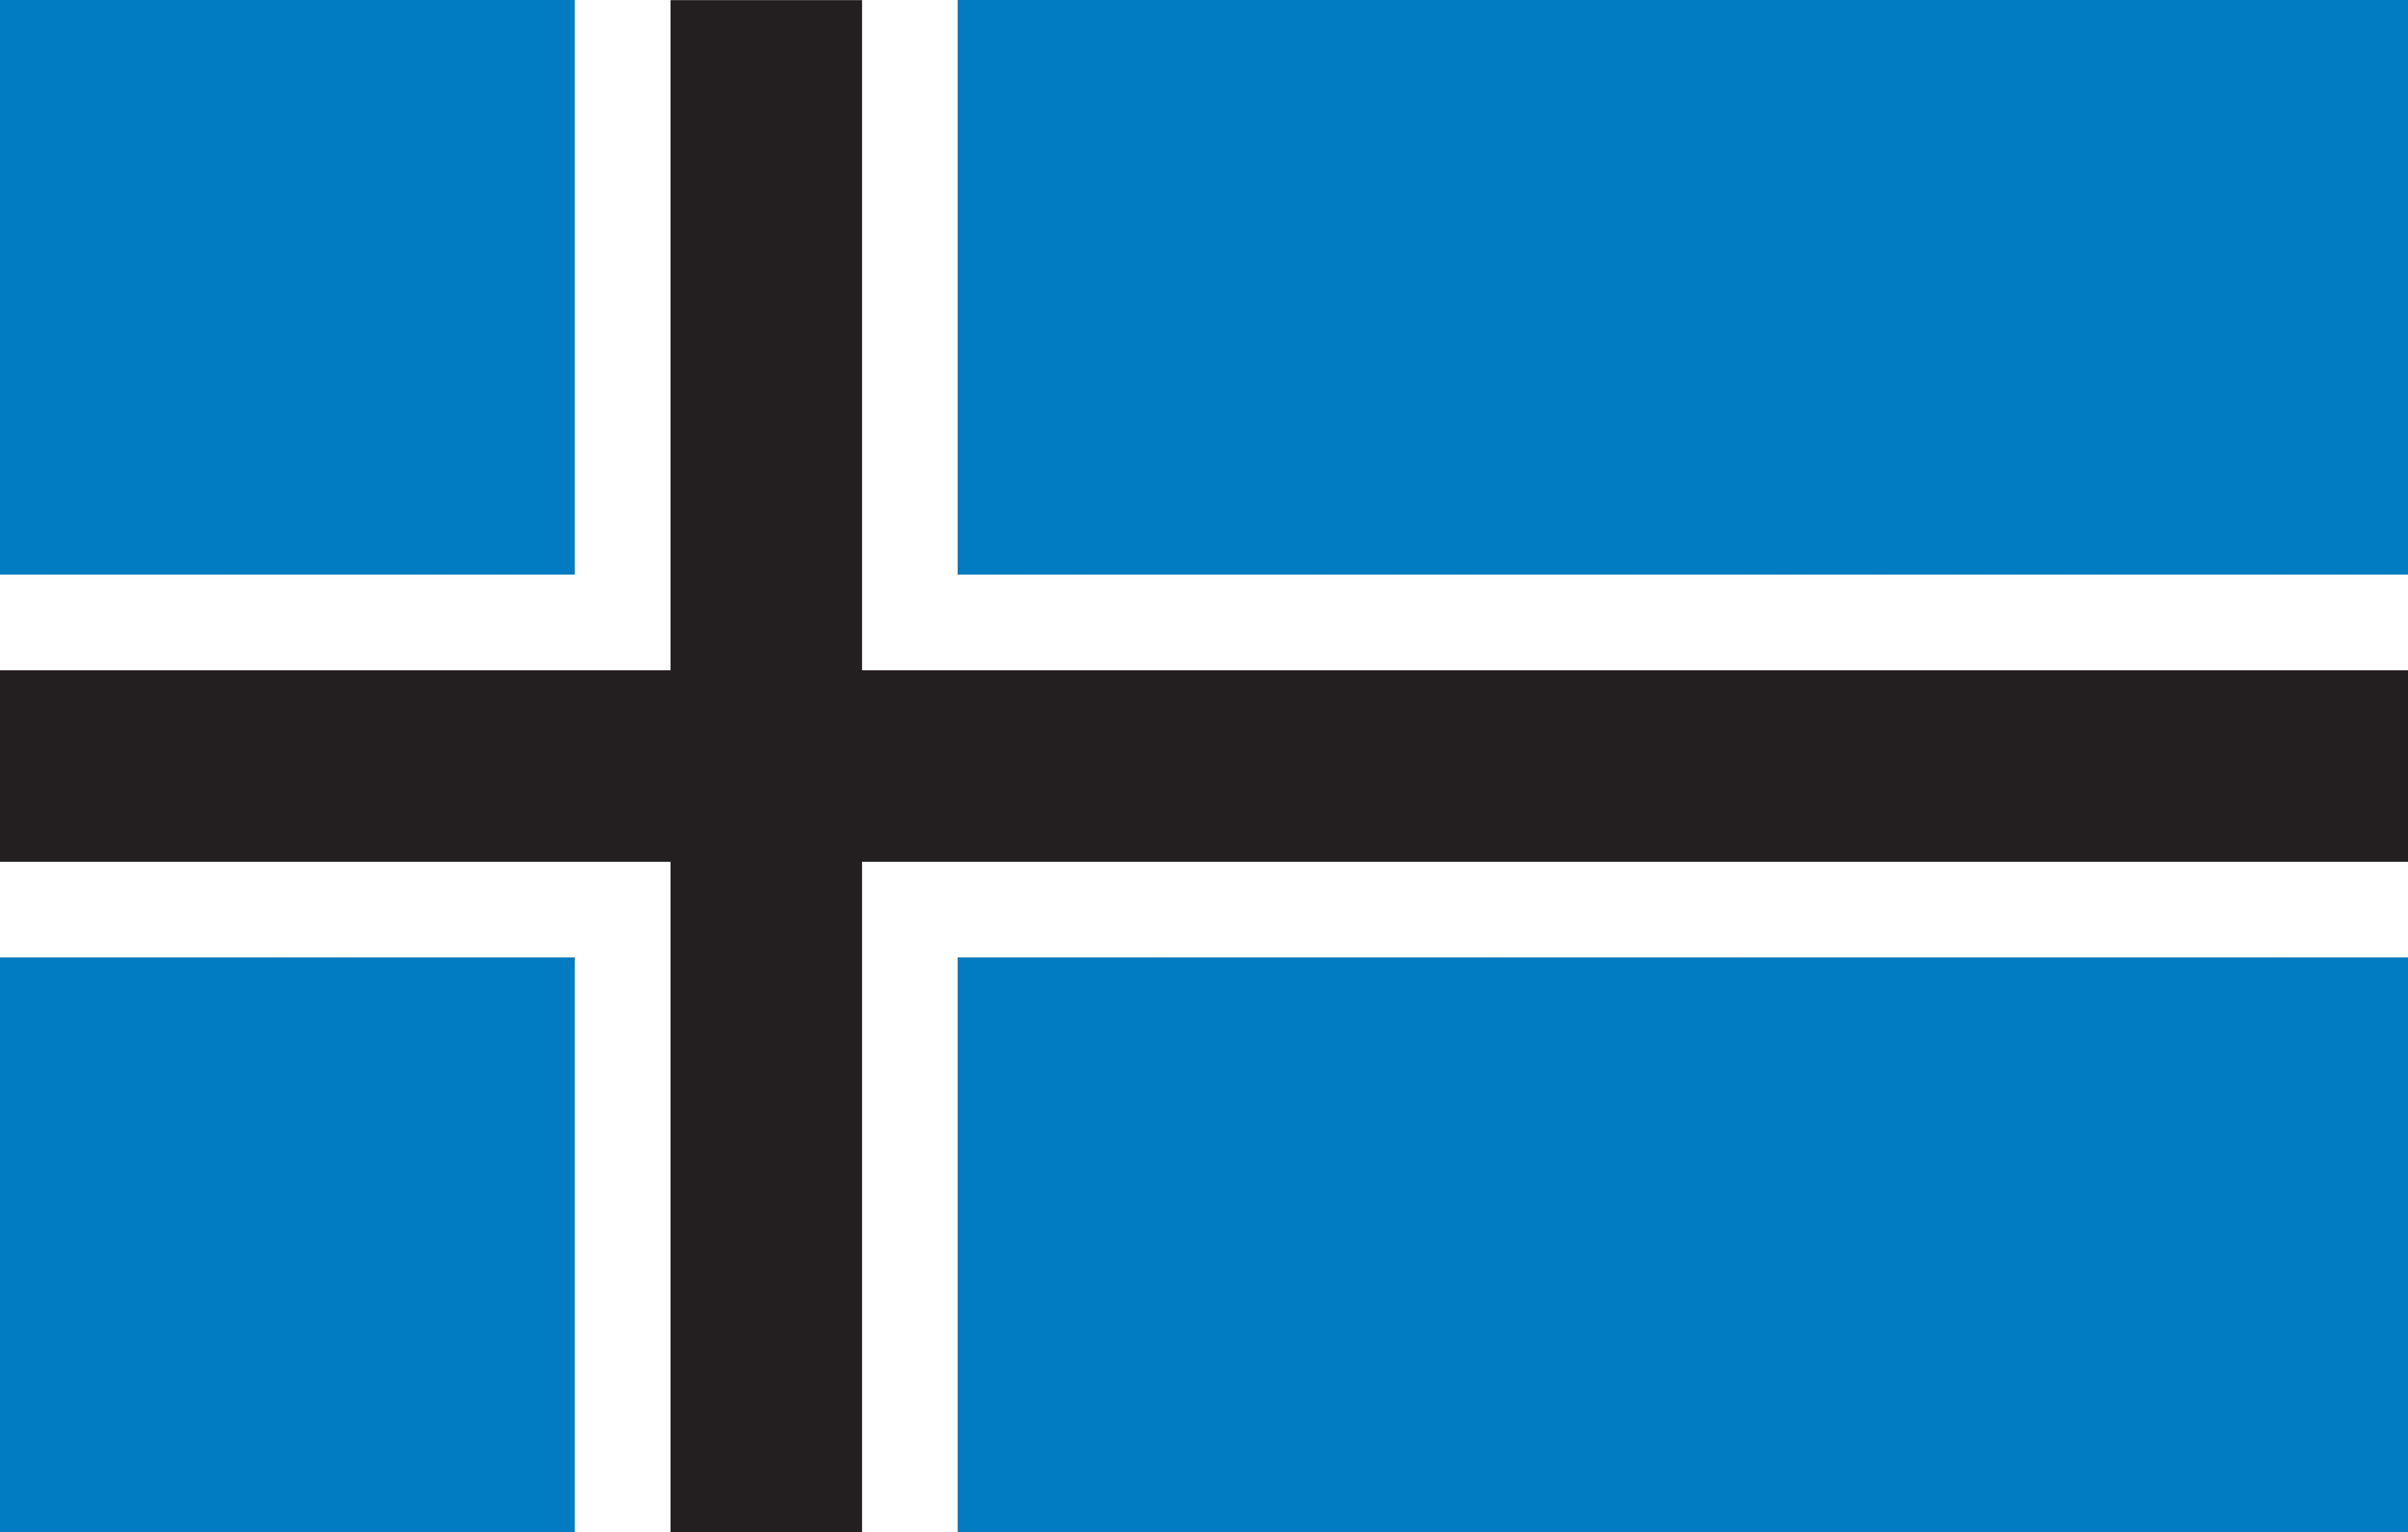 Nordic cross flag Estonia: 
Cờ thập chữ Scandinavia của Estonia thực sự là một trong những quốc kỳ tuyệt đẹp nhất trên thế giới. Với sắc đỏ, trắng và đen đặc trưng, cờ này đại diện cho tinh thần bất khuất, dũng cảm, cùng sự bền vững của Estonia. Ảnh của cờ này sẽ khiến bạn cảm thấy tuyệt vời và đầy hứng khởi.